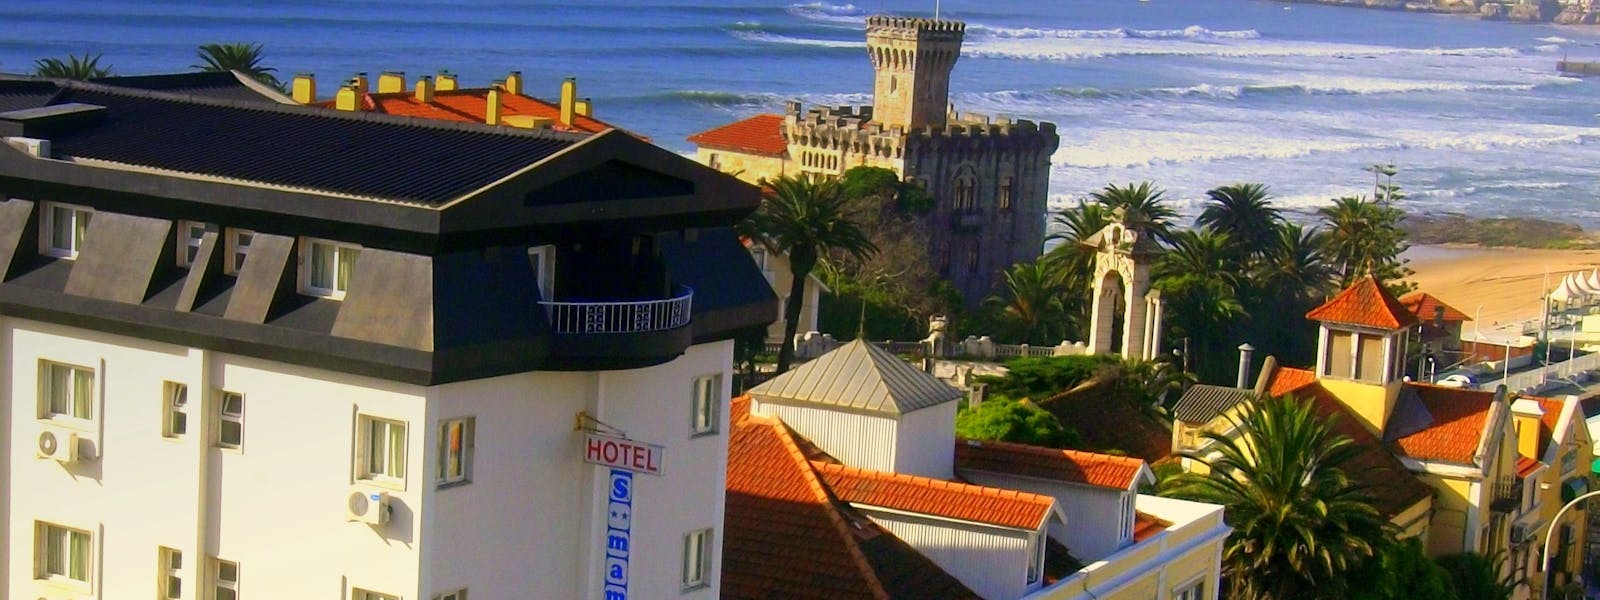 Facade of the Hotel São Mamede with Cascais bay on the backside Fachada do hotel São Mamede com a baia de Cascais ao fundo.